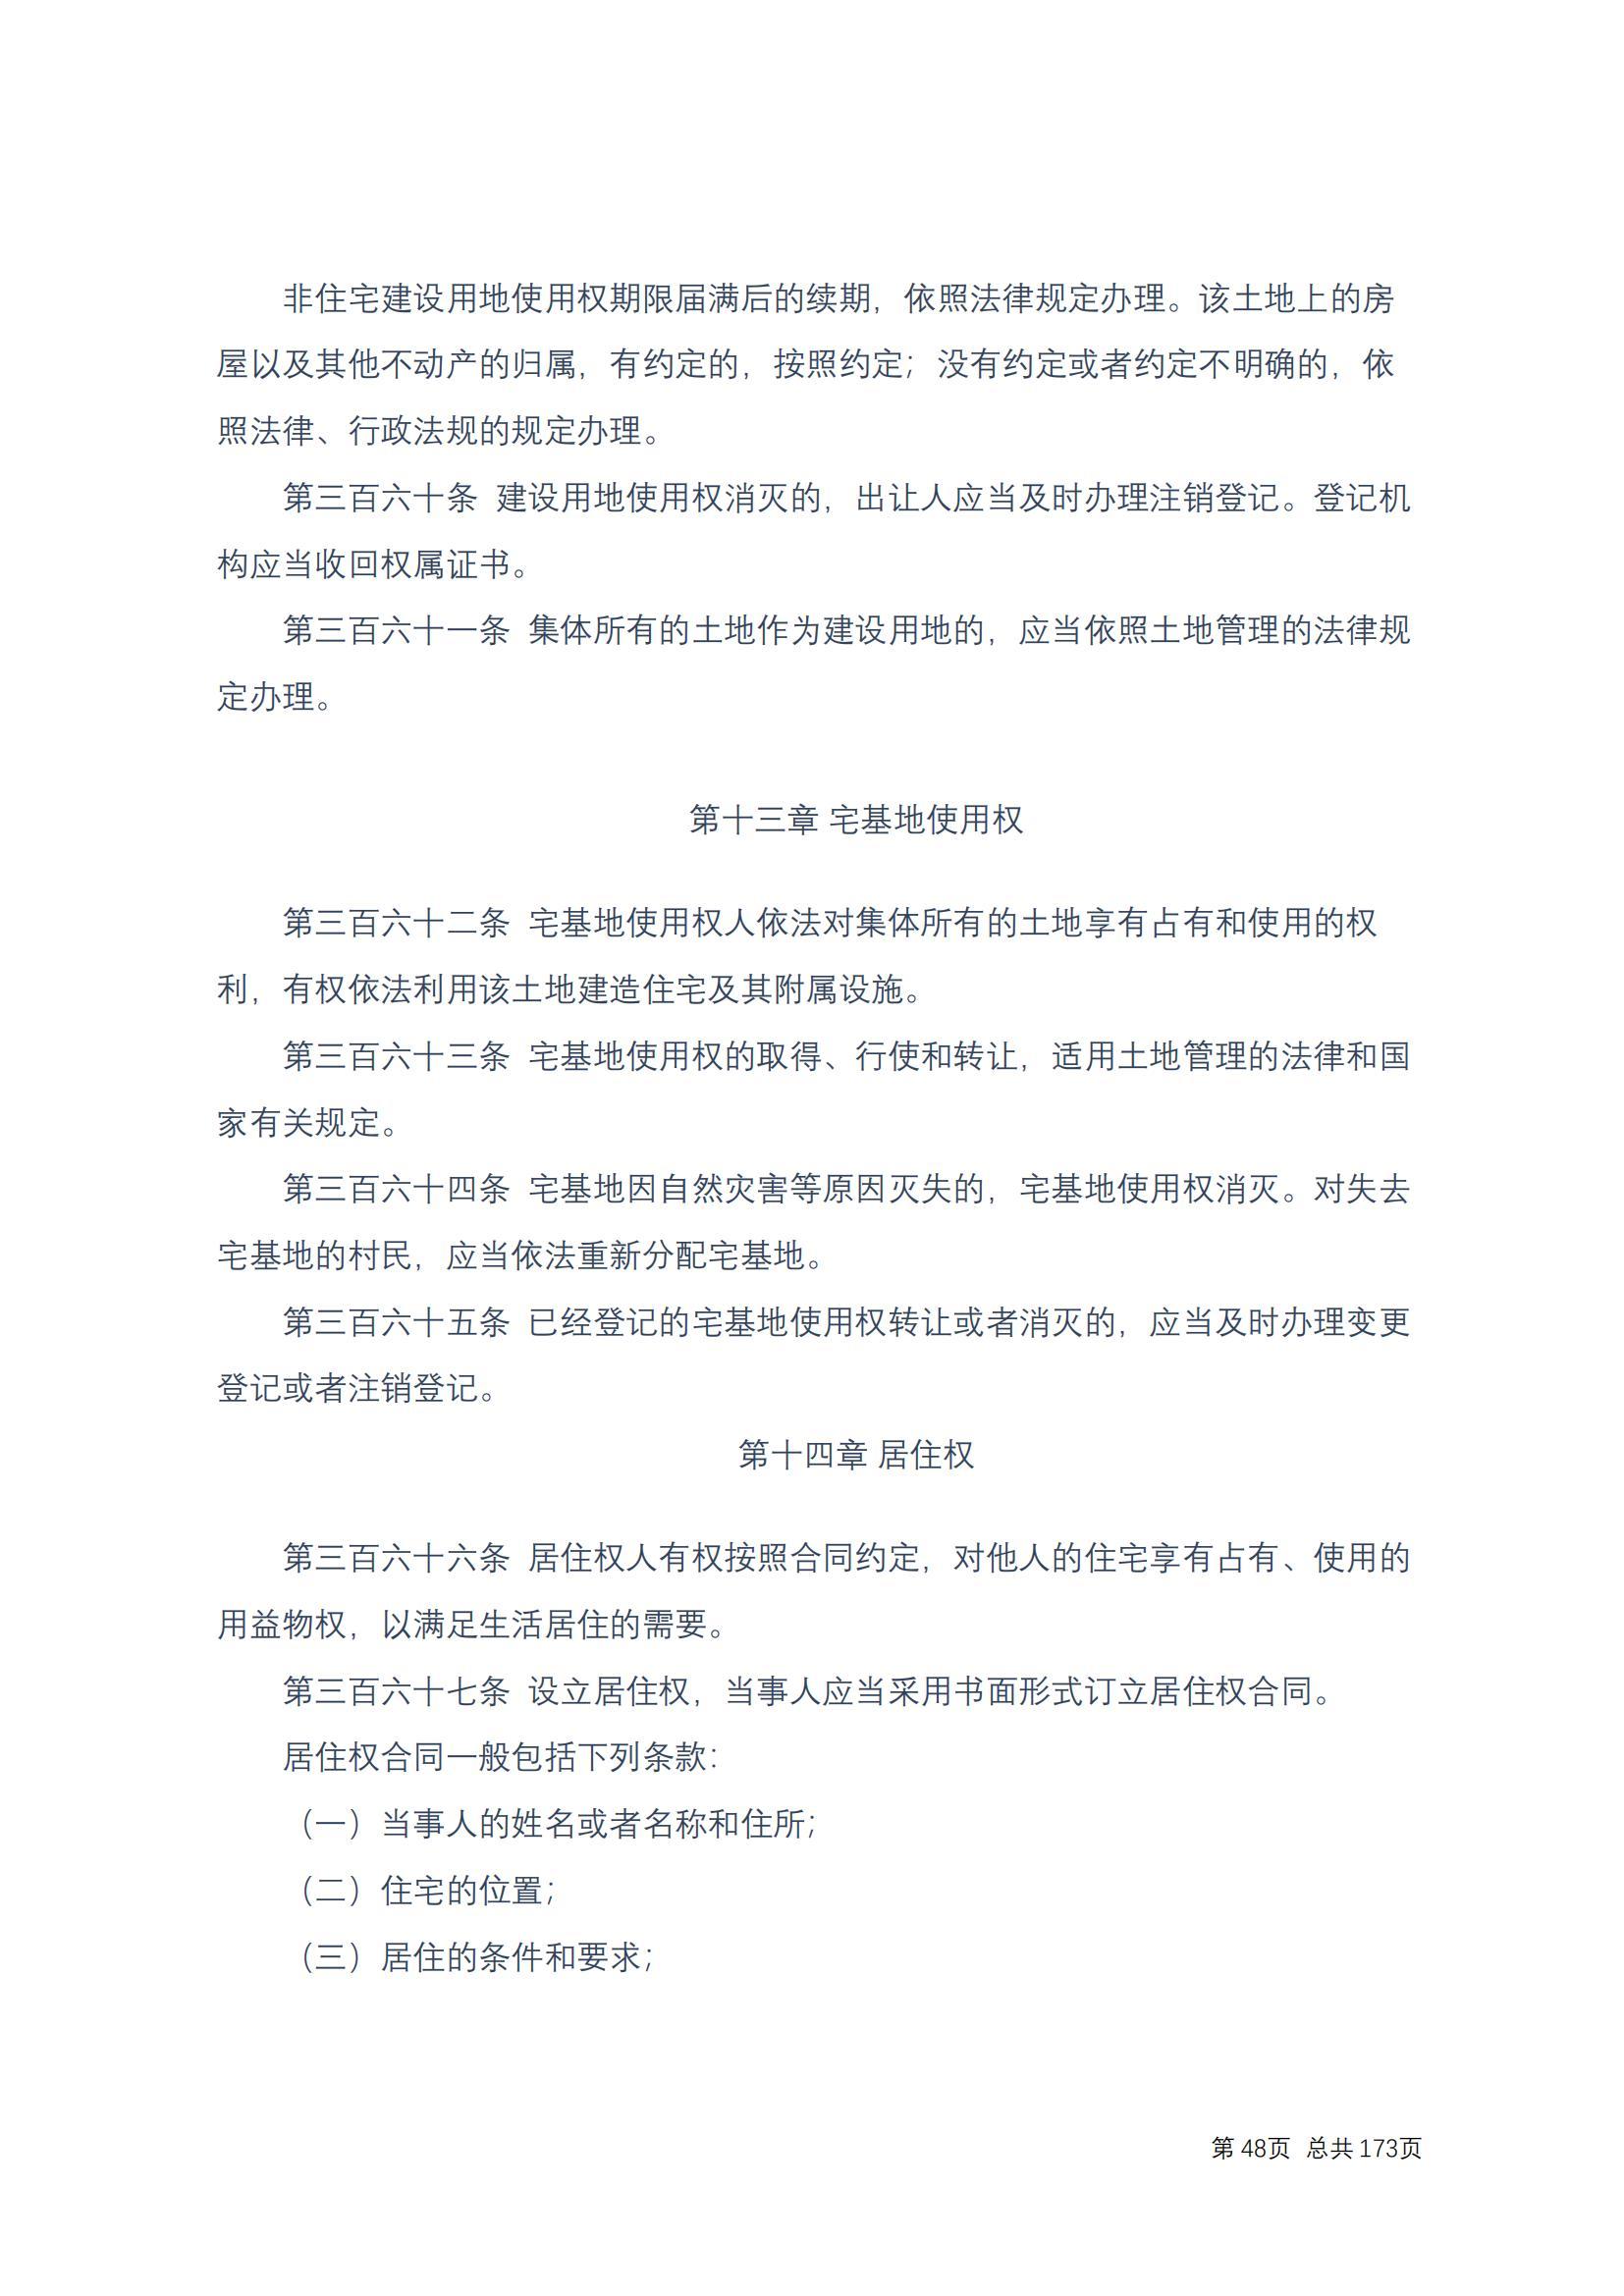 中华人民共和国民法典 修改过_47